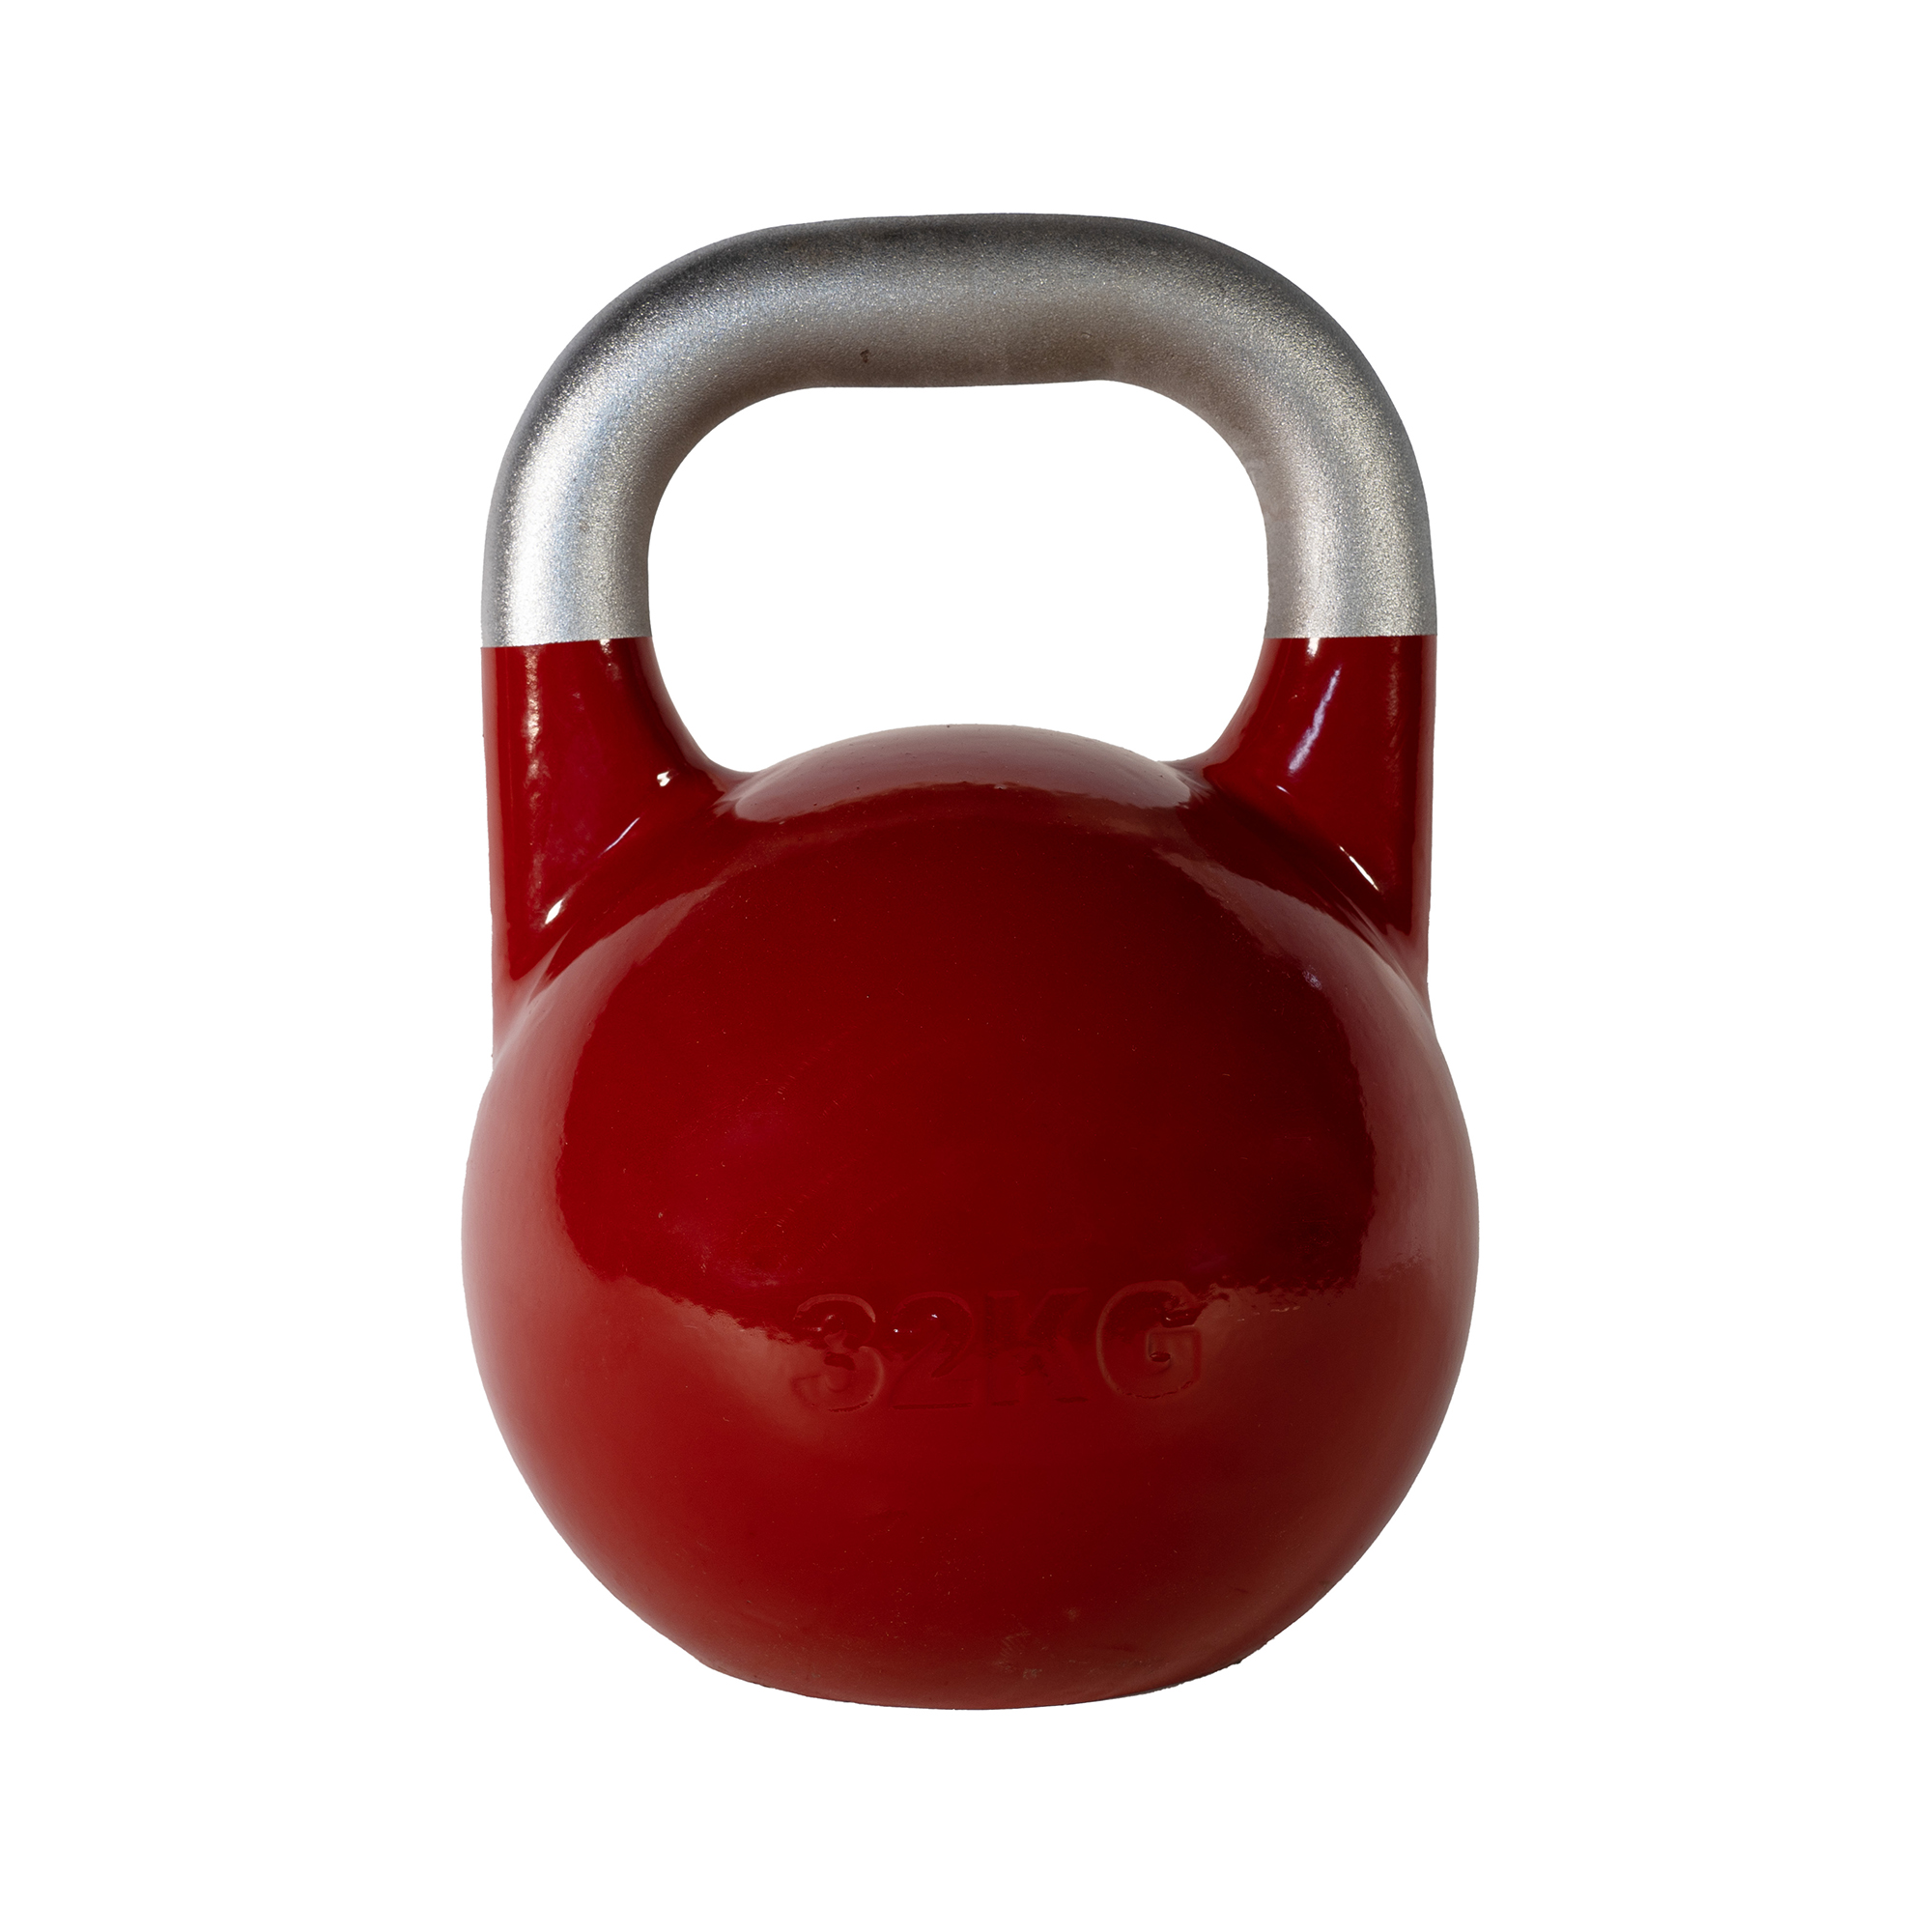 Brug SQ&SN Competition Kettlebell (32 kg) i støbejern. Udstyr til crossfit træning, styrketræning og funktionel træning til en forbedret oplevelse